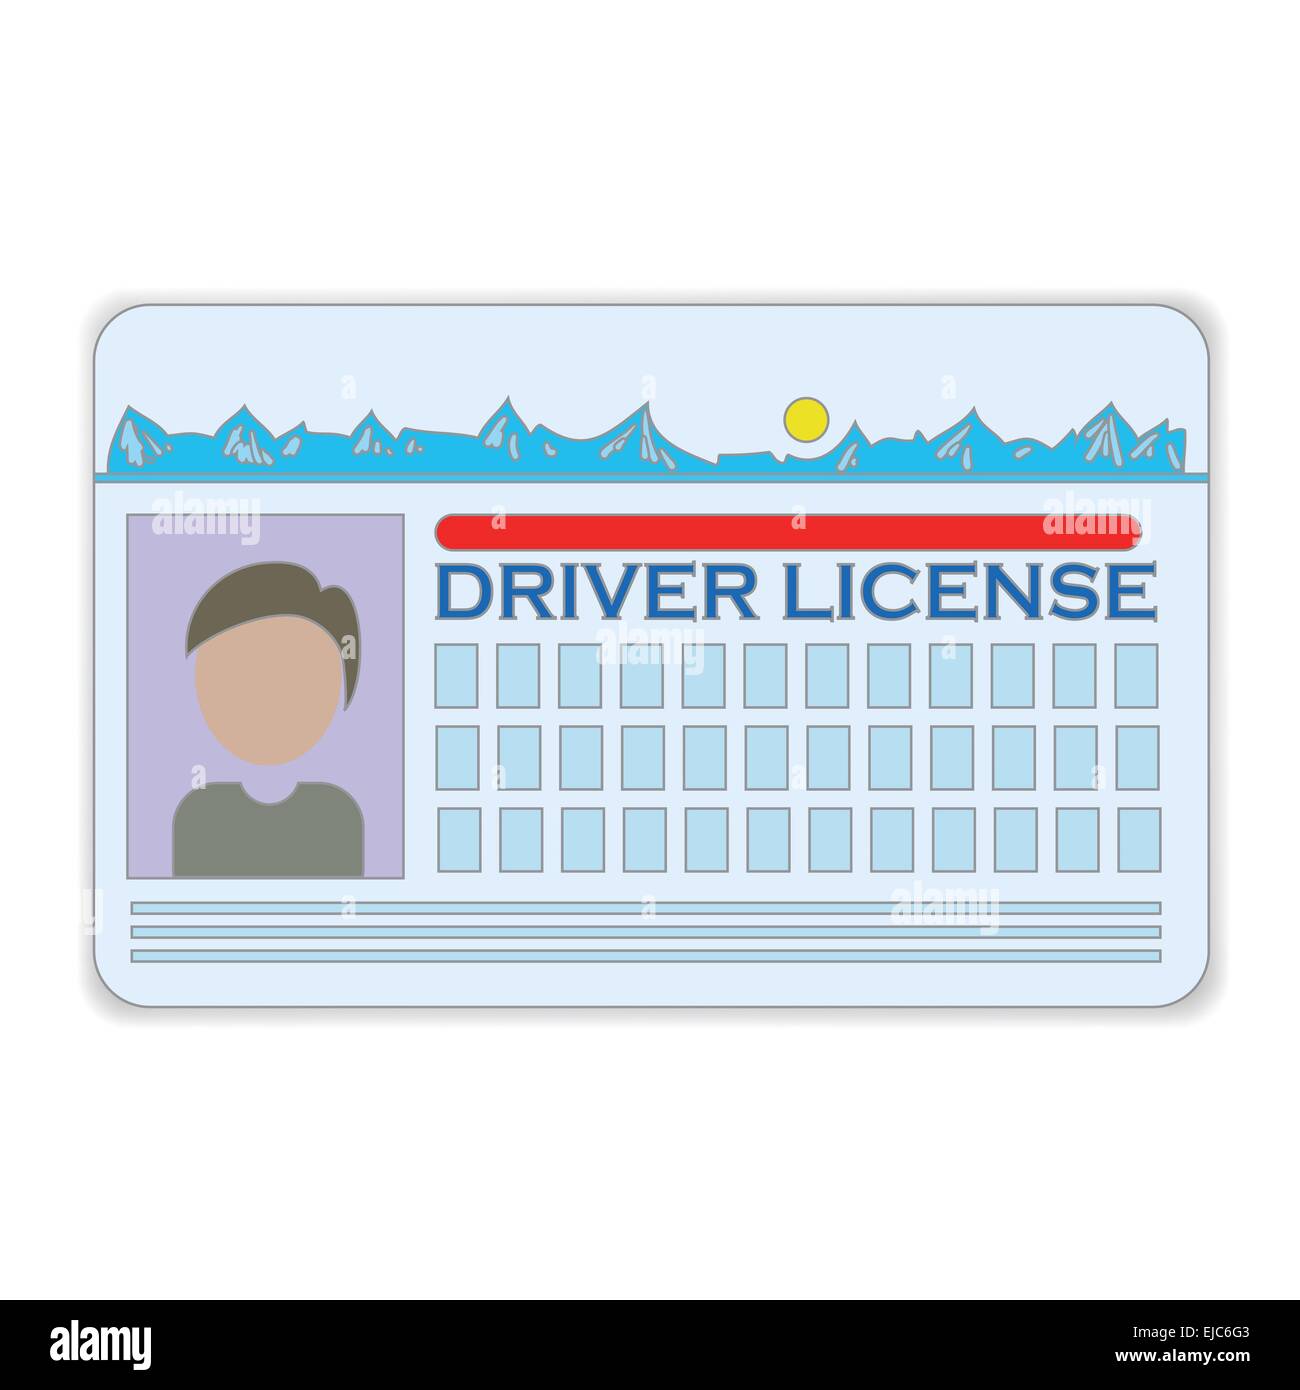 driver license Stock Photo